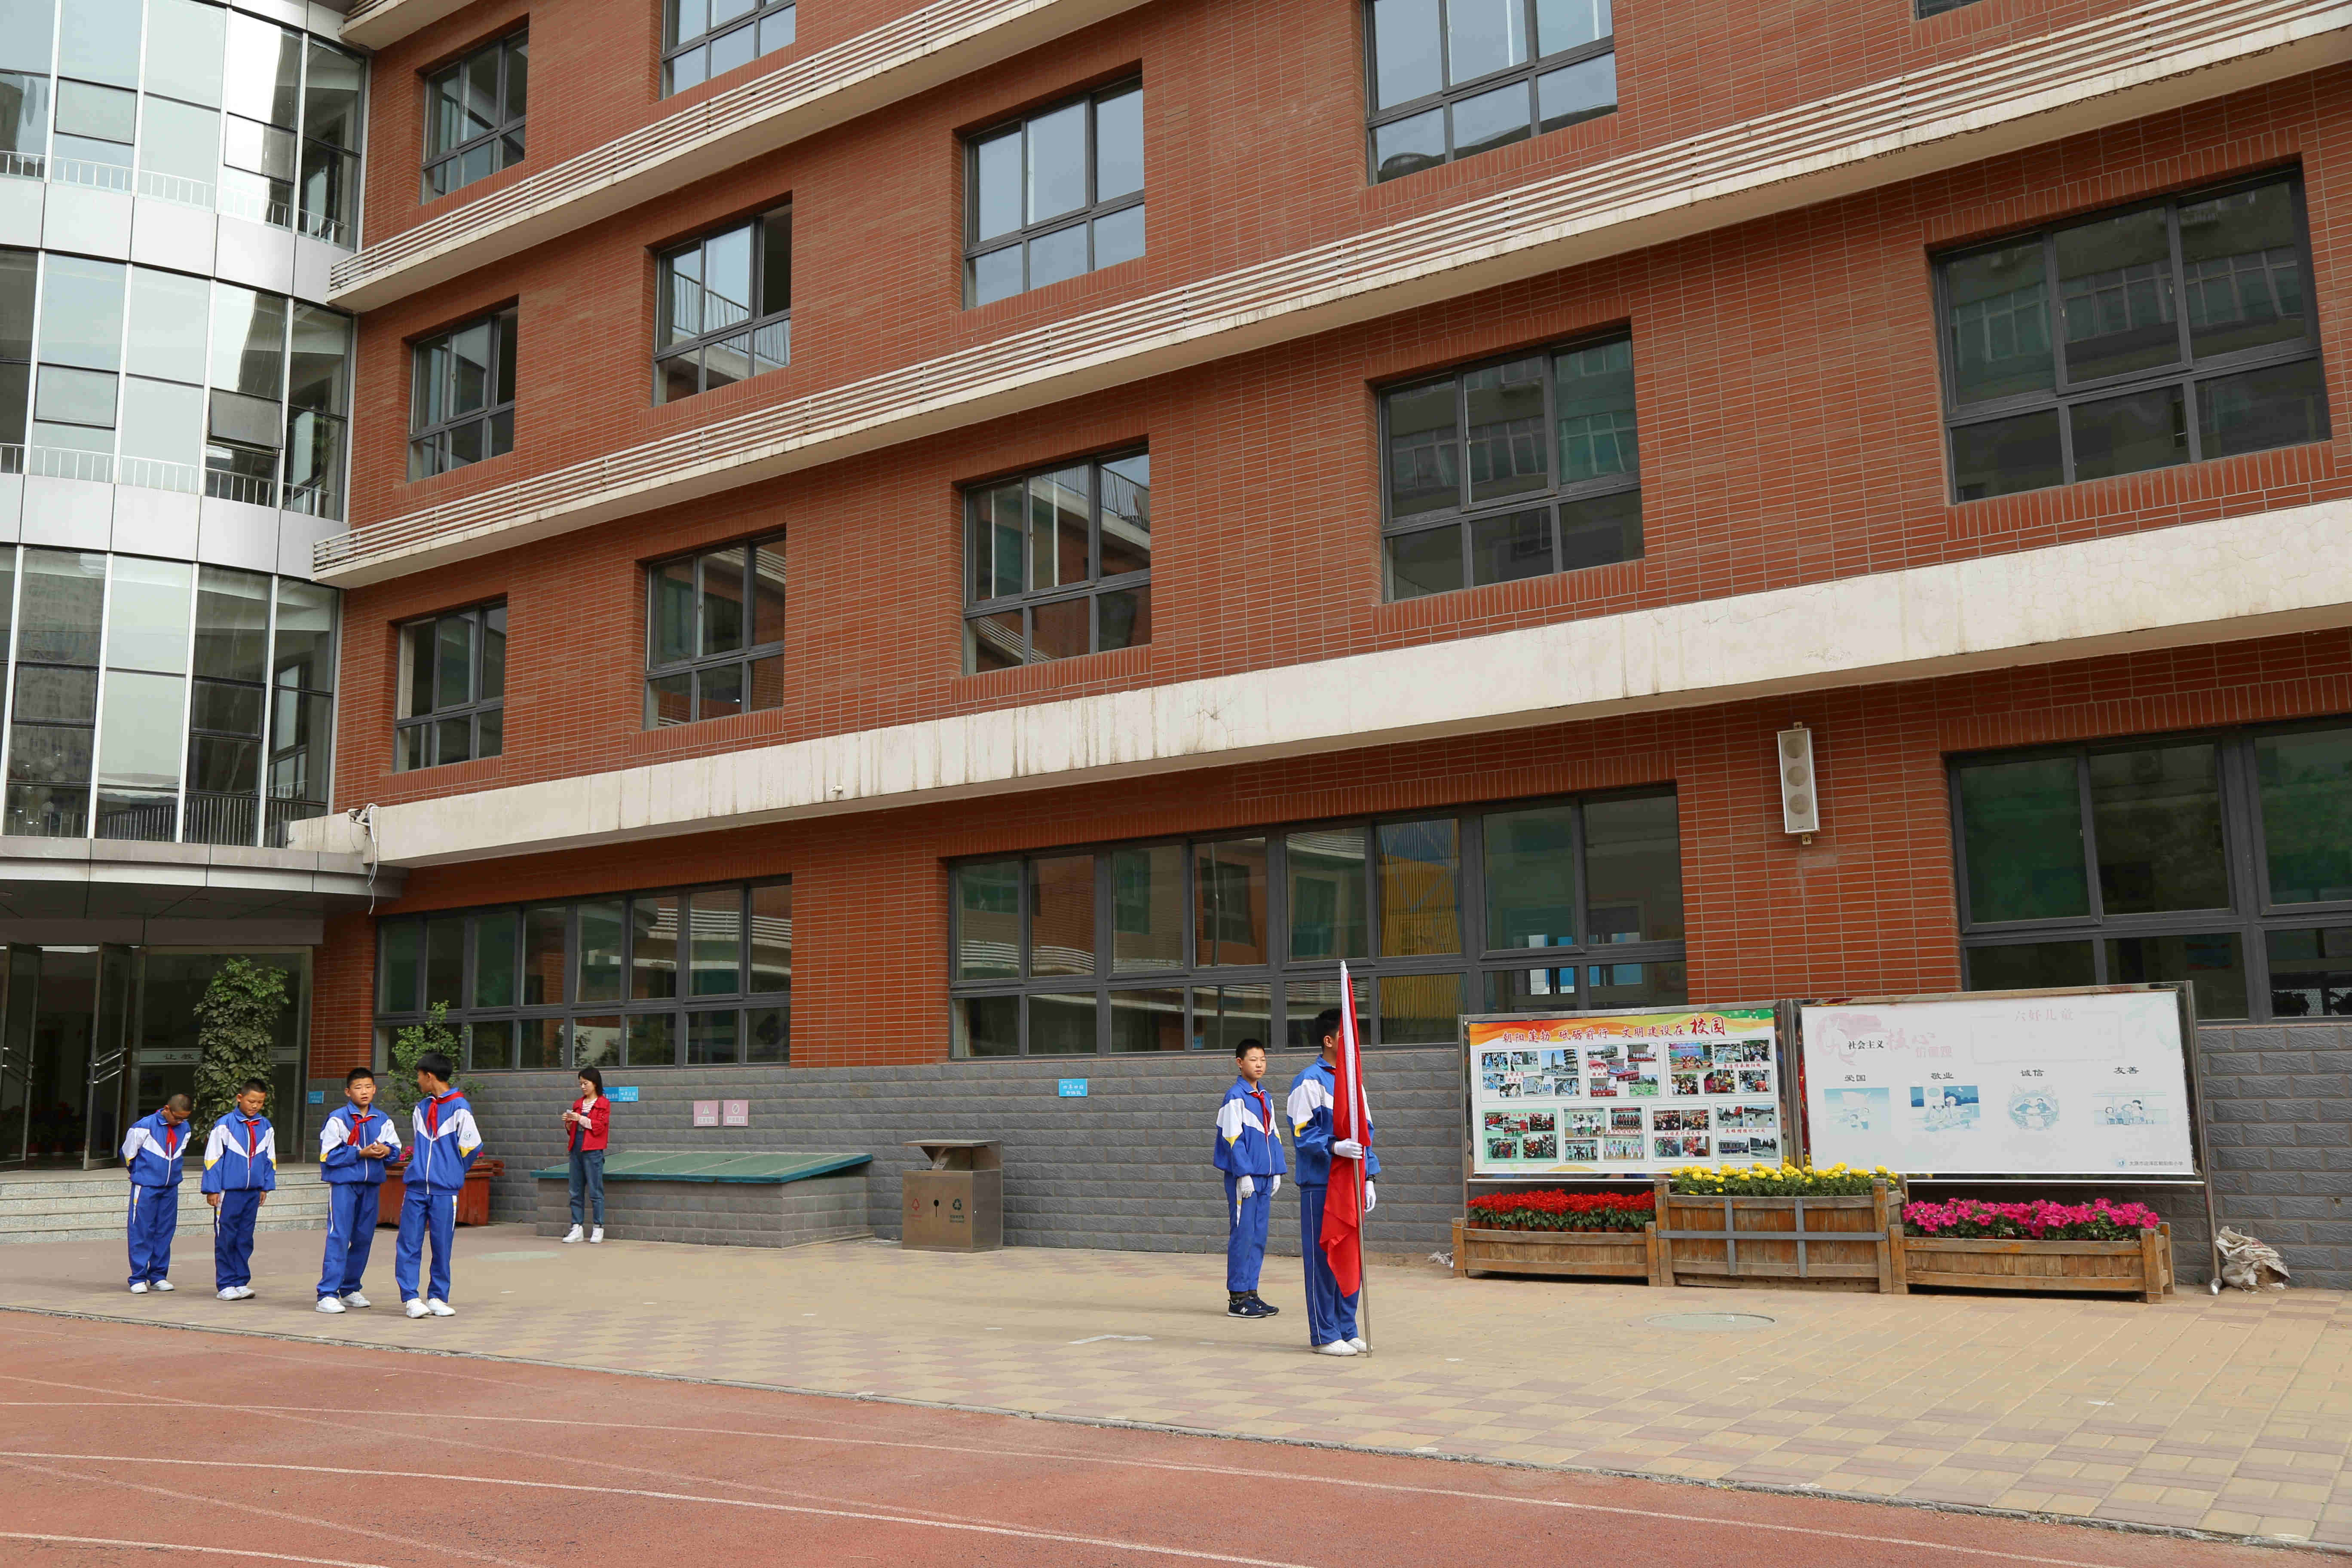 为共产主义事业而奋斗时刻准备着迎泽区朝阳街小学举行新队员入队仪式